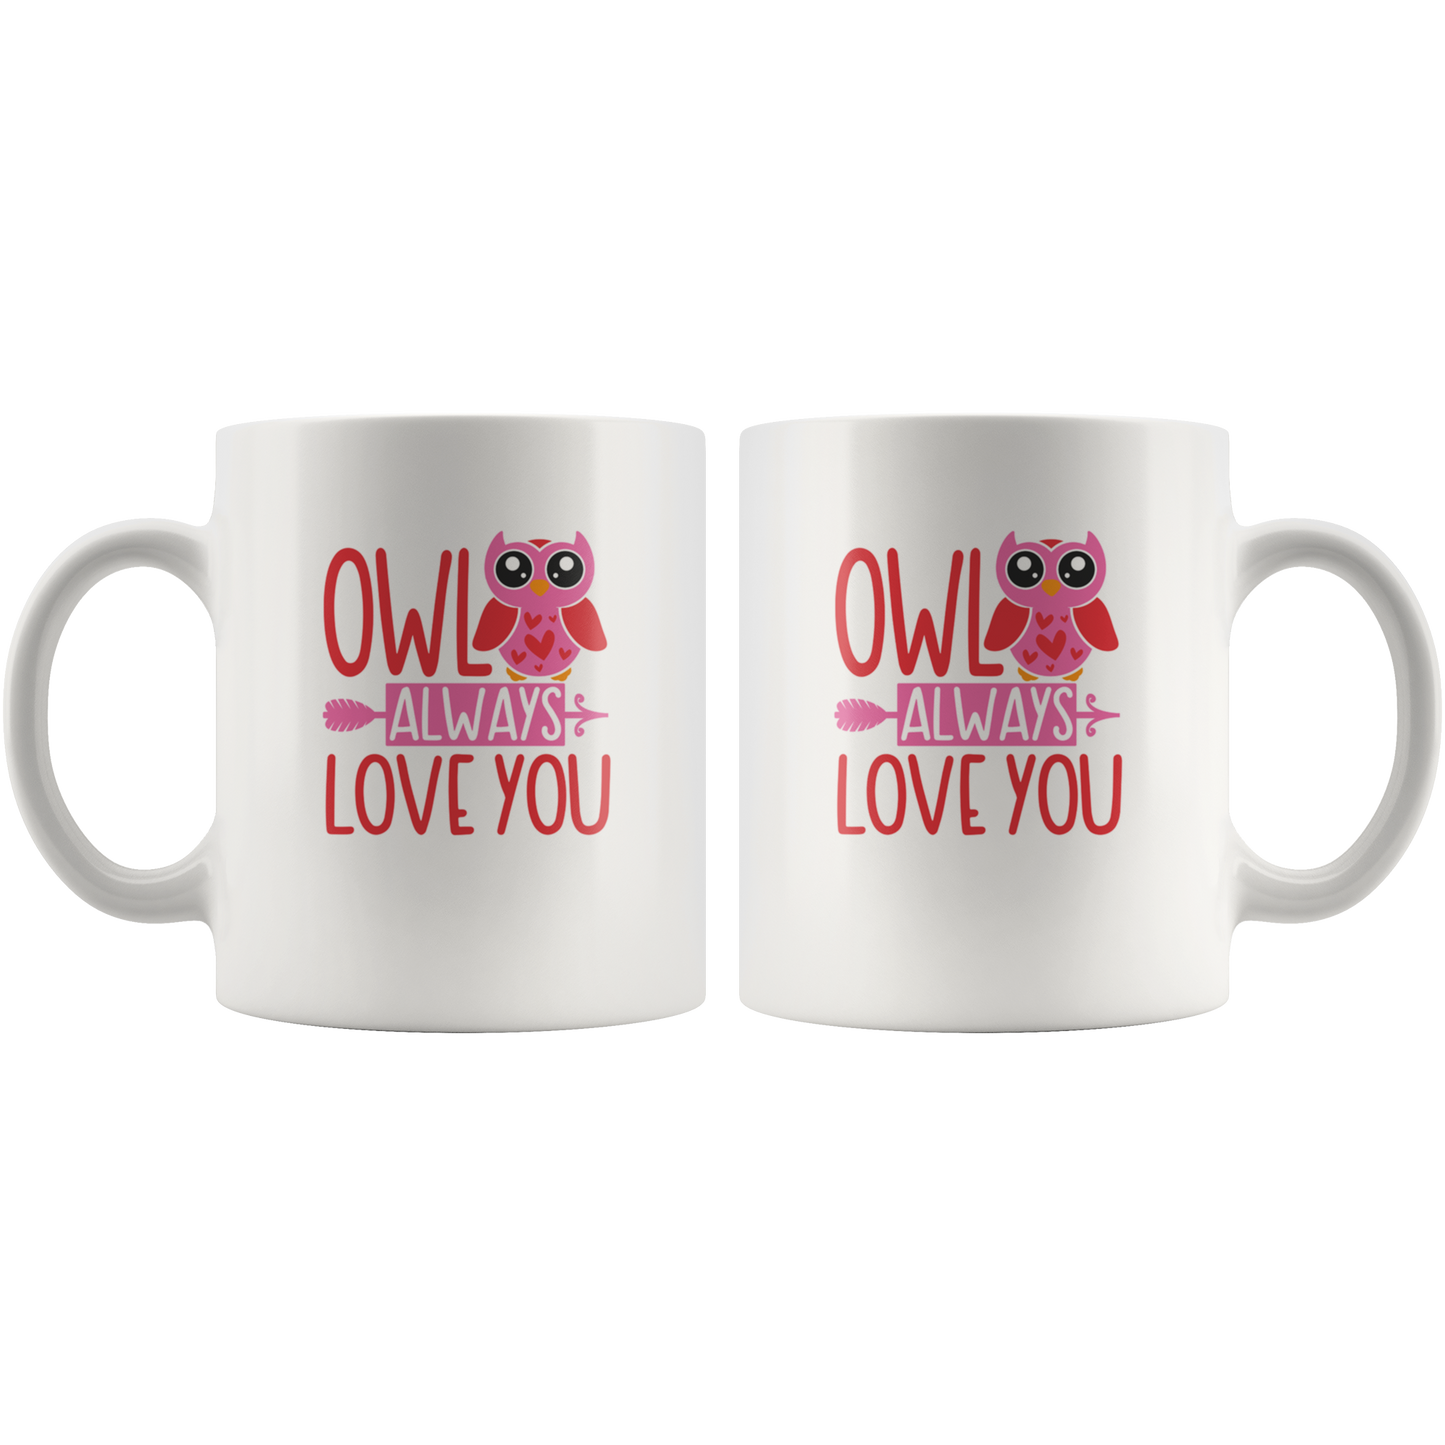 Owl mug - Owl gifts owl coffee mug  owl gifts for her  valentine's coffee mug gift